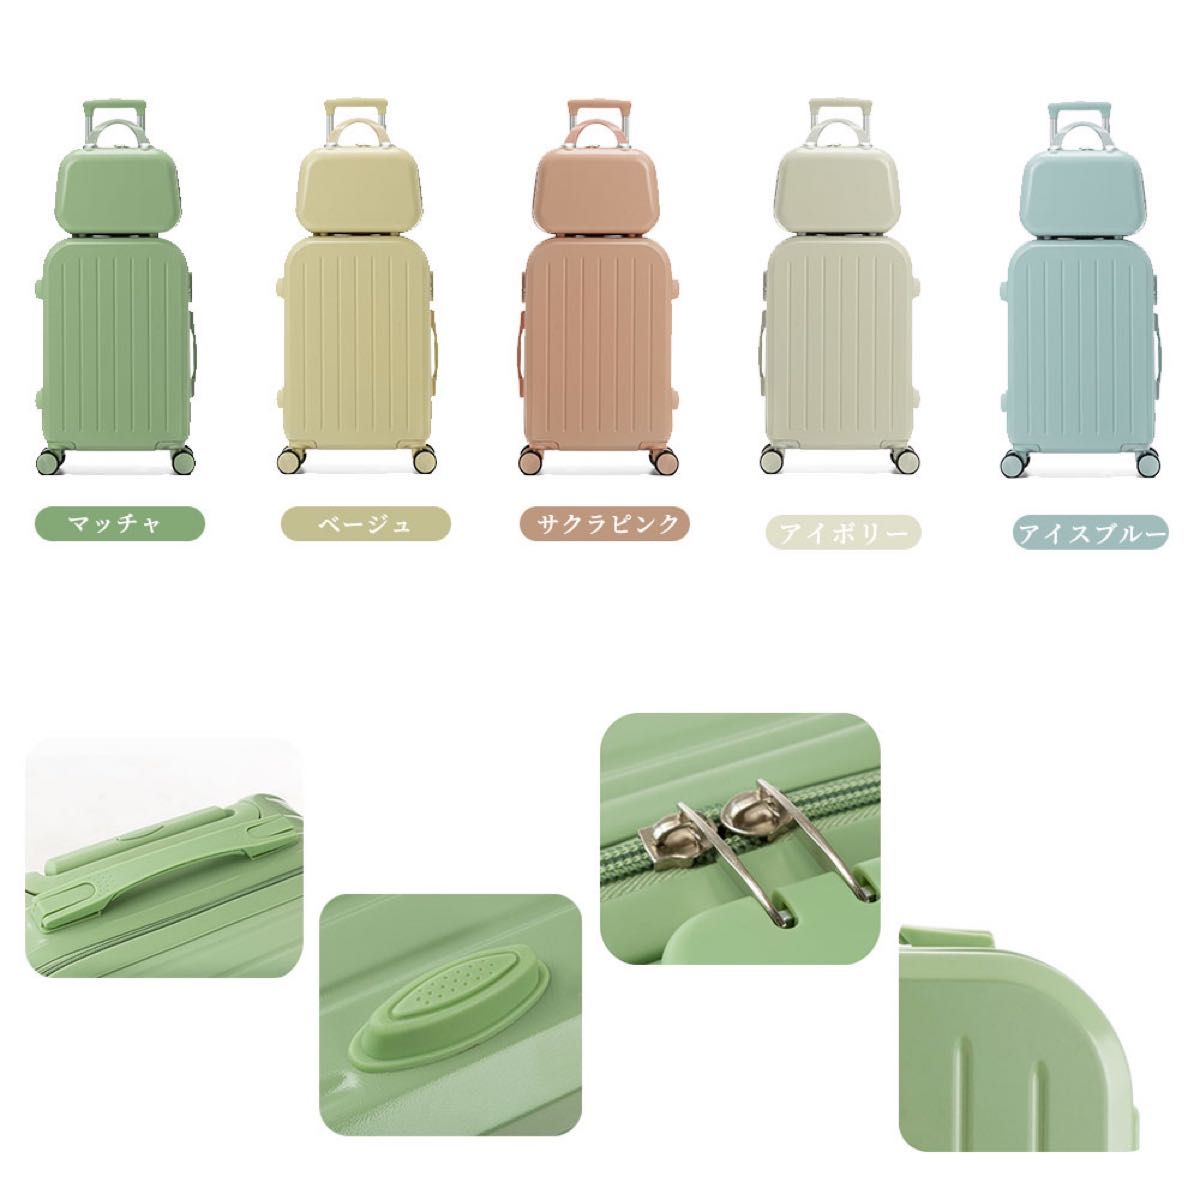 スーツケース 大小セット キャリーケース フレームタイプ 軽量 ダイヤルロック 旅行バッグ 機内持ち込み キャリーバッグ